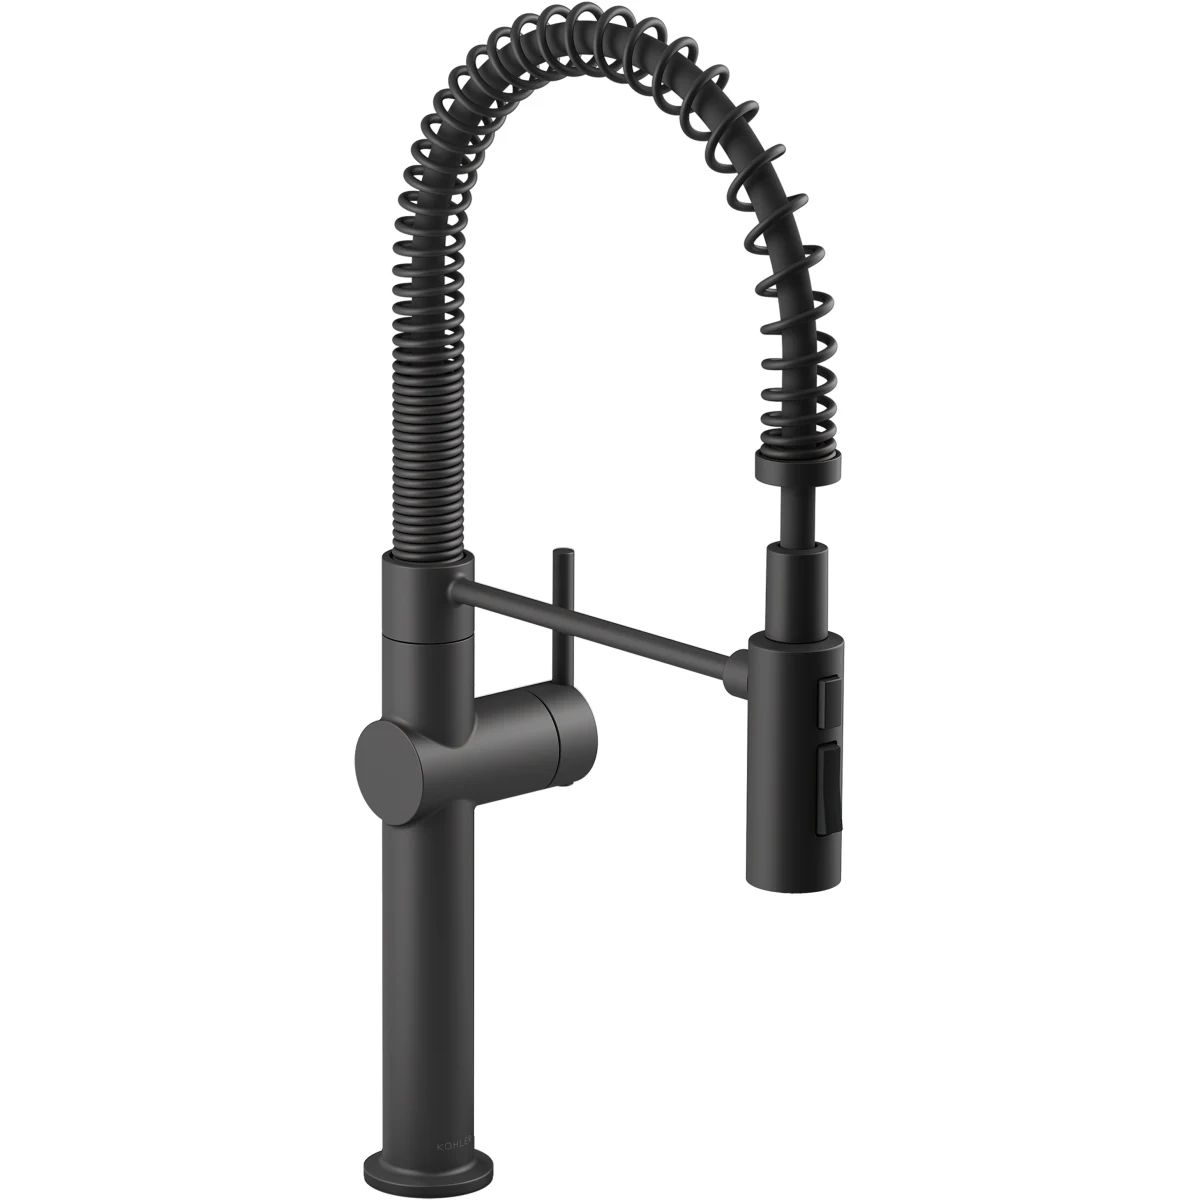 Crue 1.5 GPM Single Hole Pre-Rinse Pull Down Kitchen Faucet - Includes Escutcheon | Build.com, Inc.